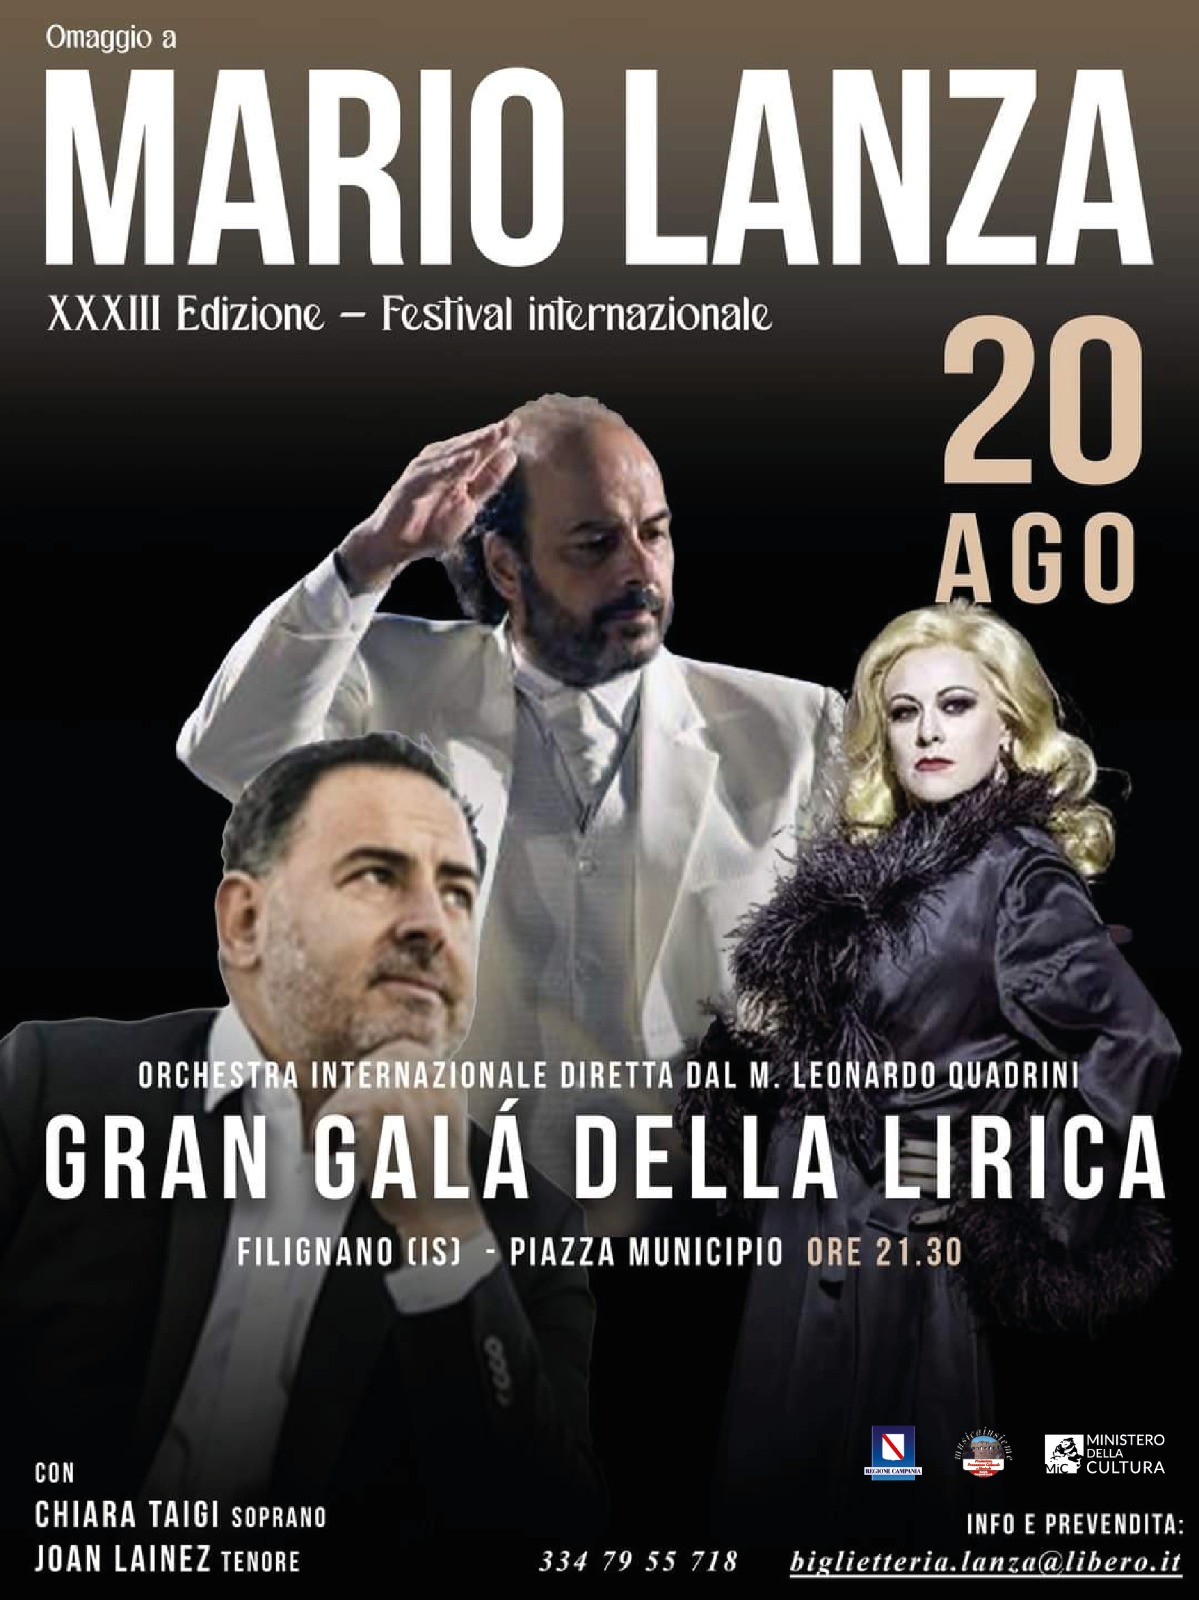 XXXIII Edizione - Festival internazionale Mario Lanza